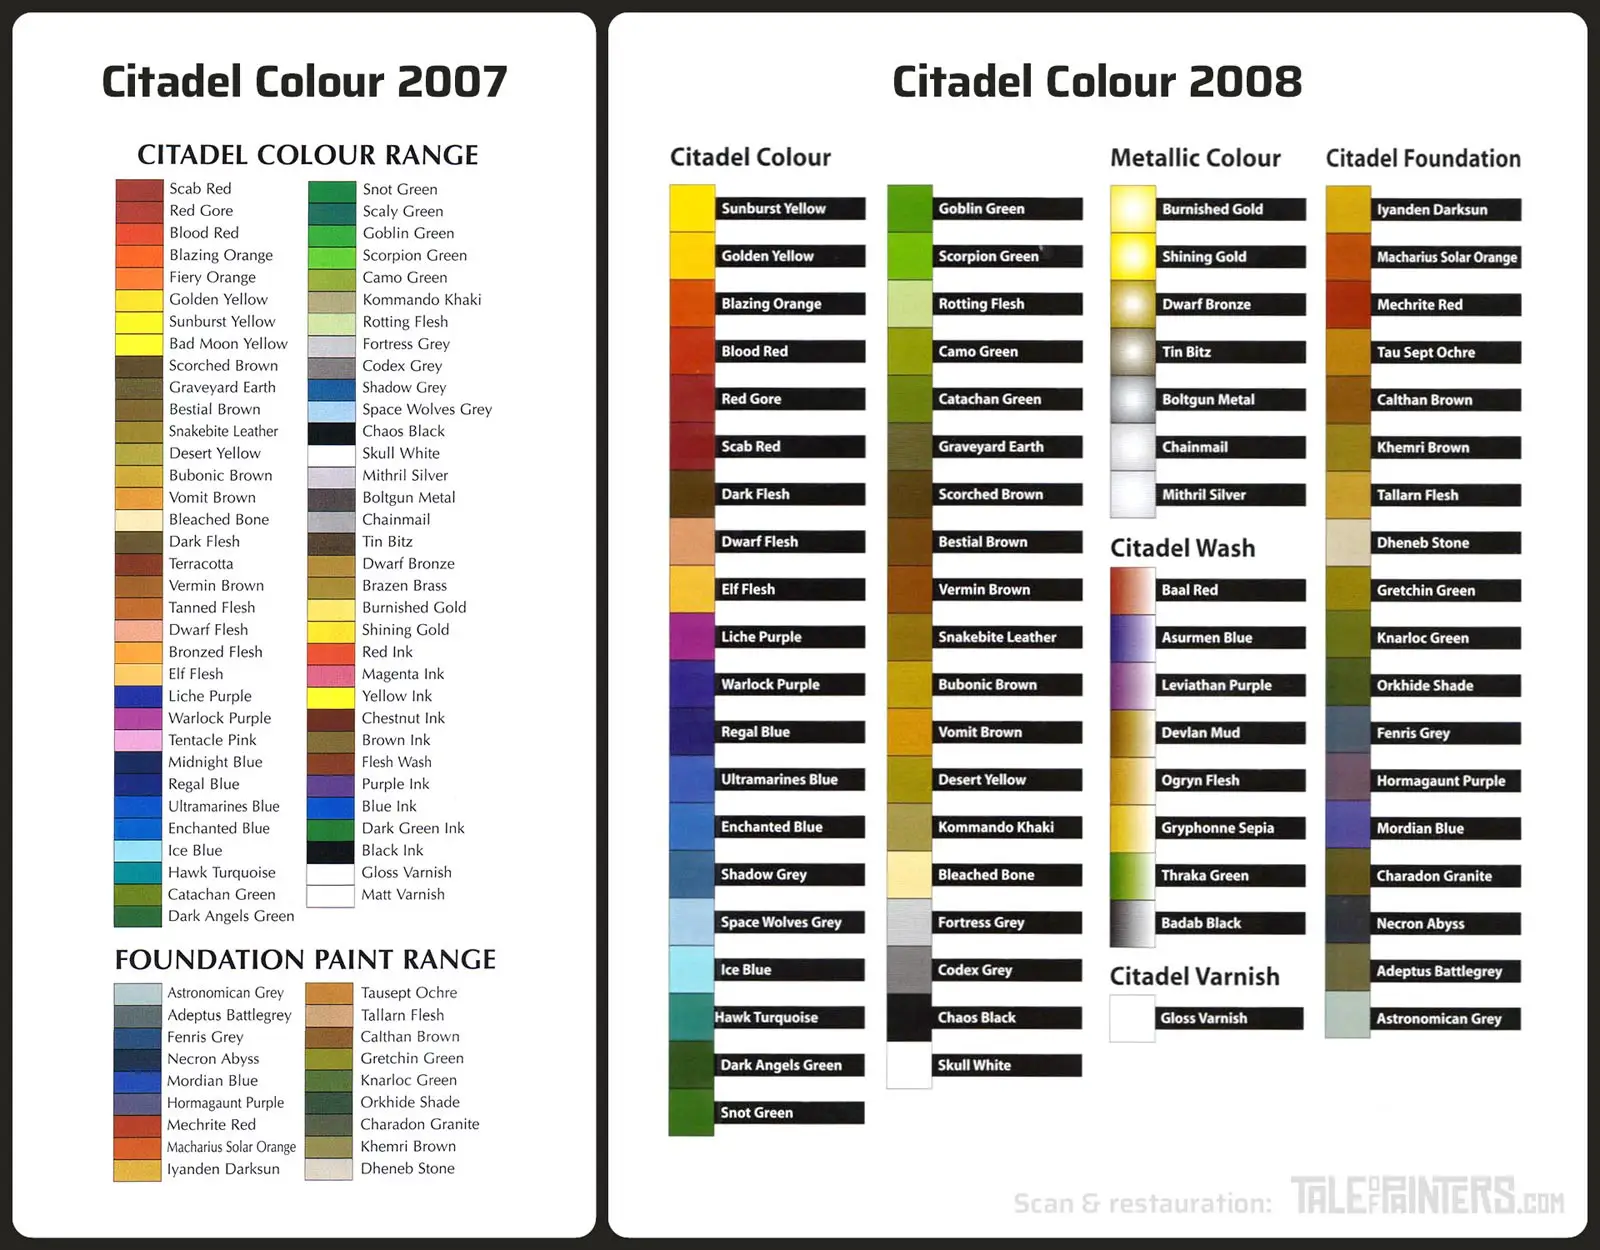 Retro review: The 1998 - 2012 Citadel Colour range » Tale of Painters